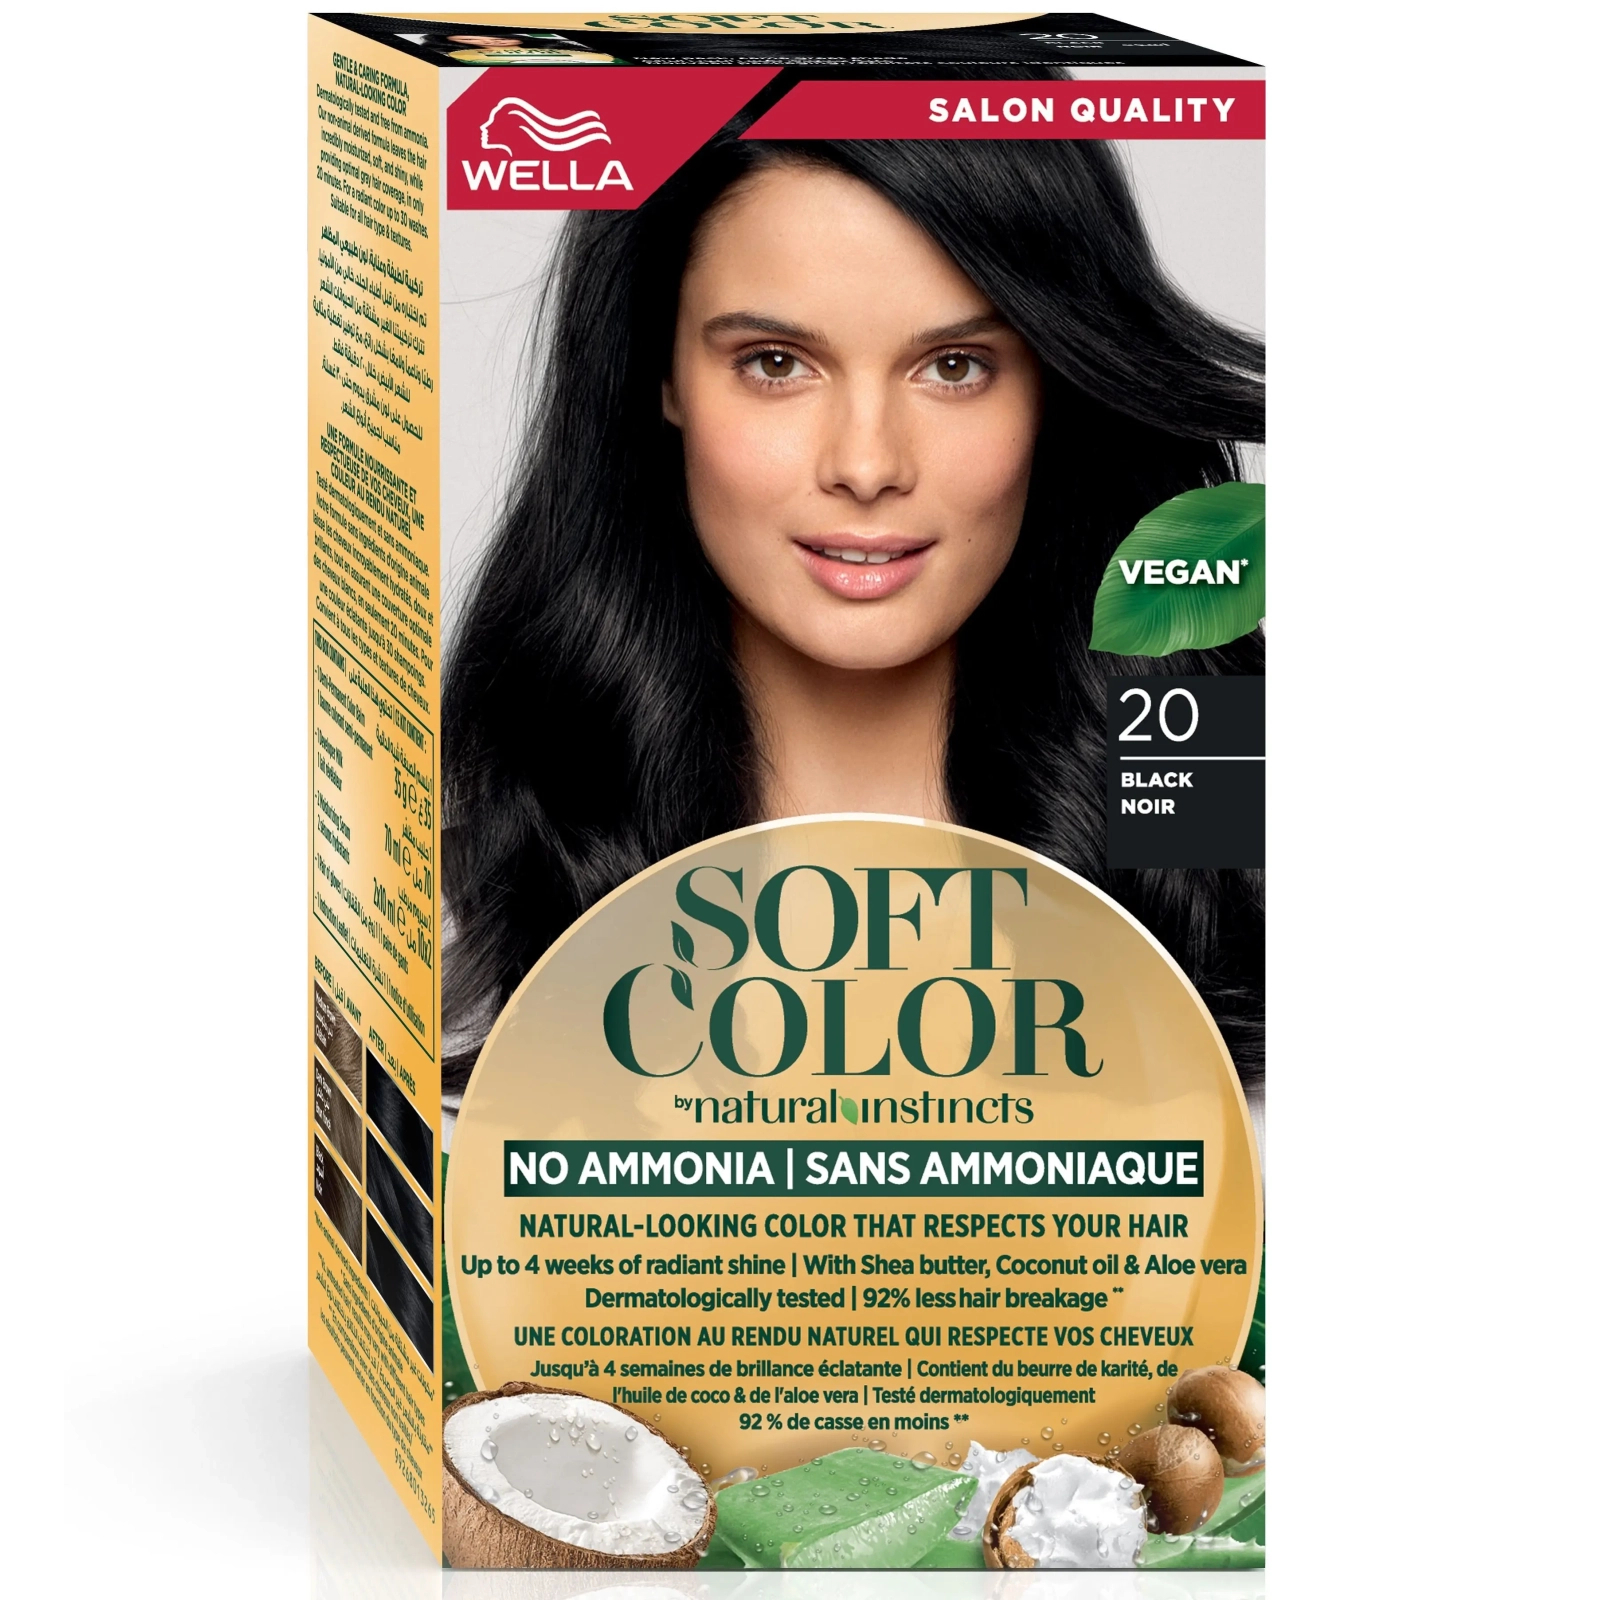 Краска для волос Wella Soft Color Безаммиачная 70 - Натуральный блонд (3614228865784)